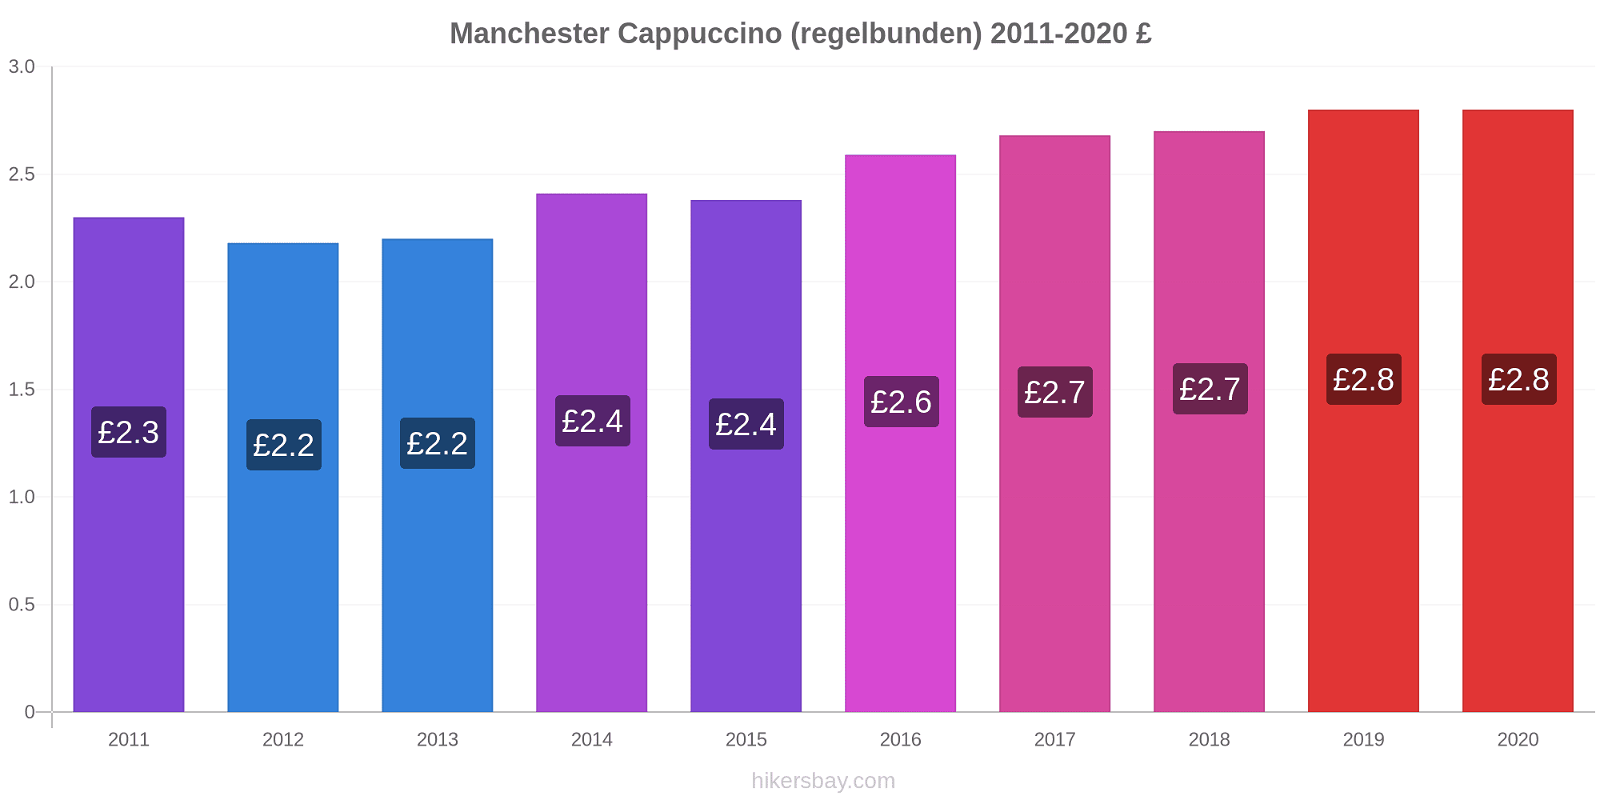 Manchester prisförändringar Cappuccino (regelbunden) hikersbay.com